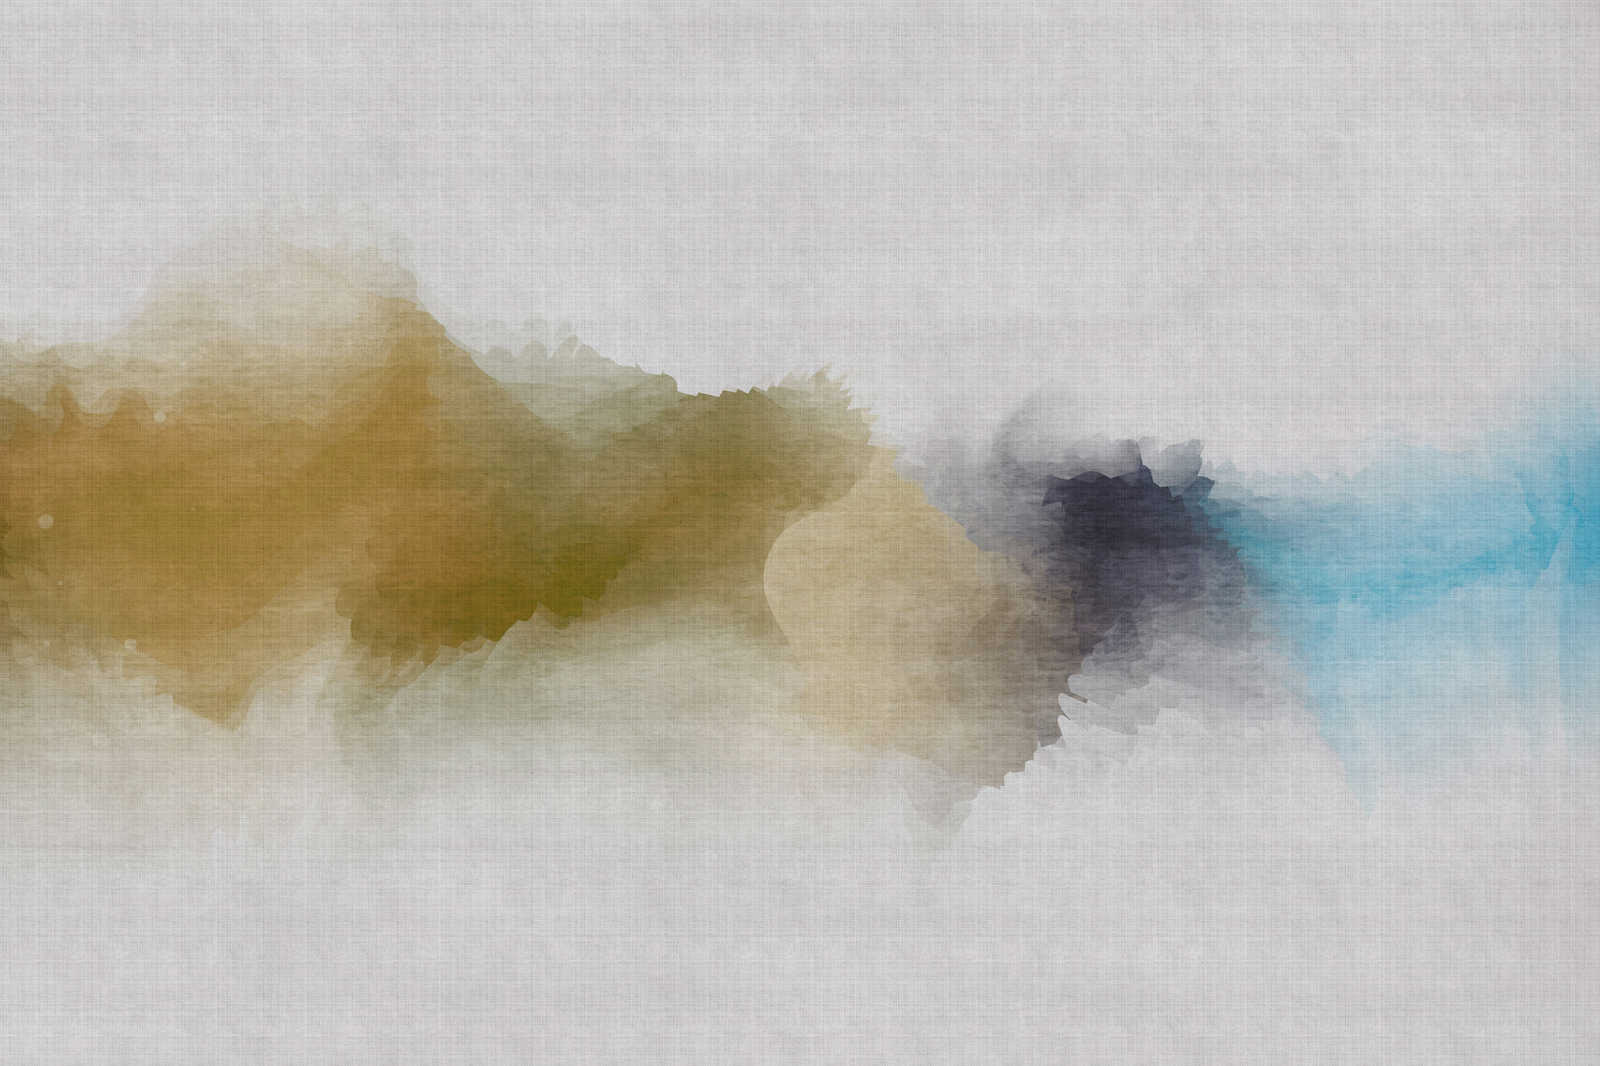             Daydream 3 - Pintura sobre lienzo nublado con motivos de acuarela - estructura de lino natural - 0,90 m x 0,60 m
        